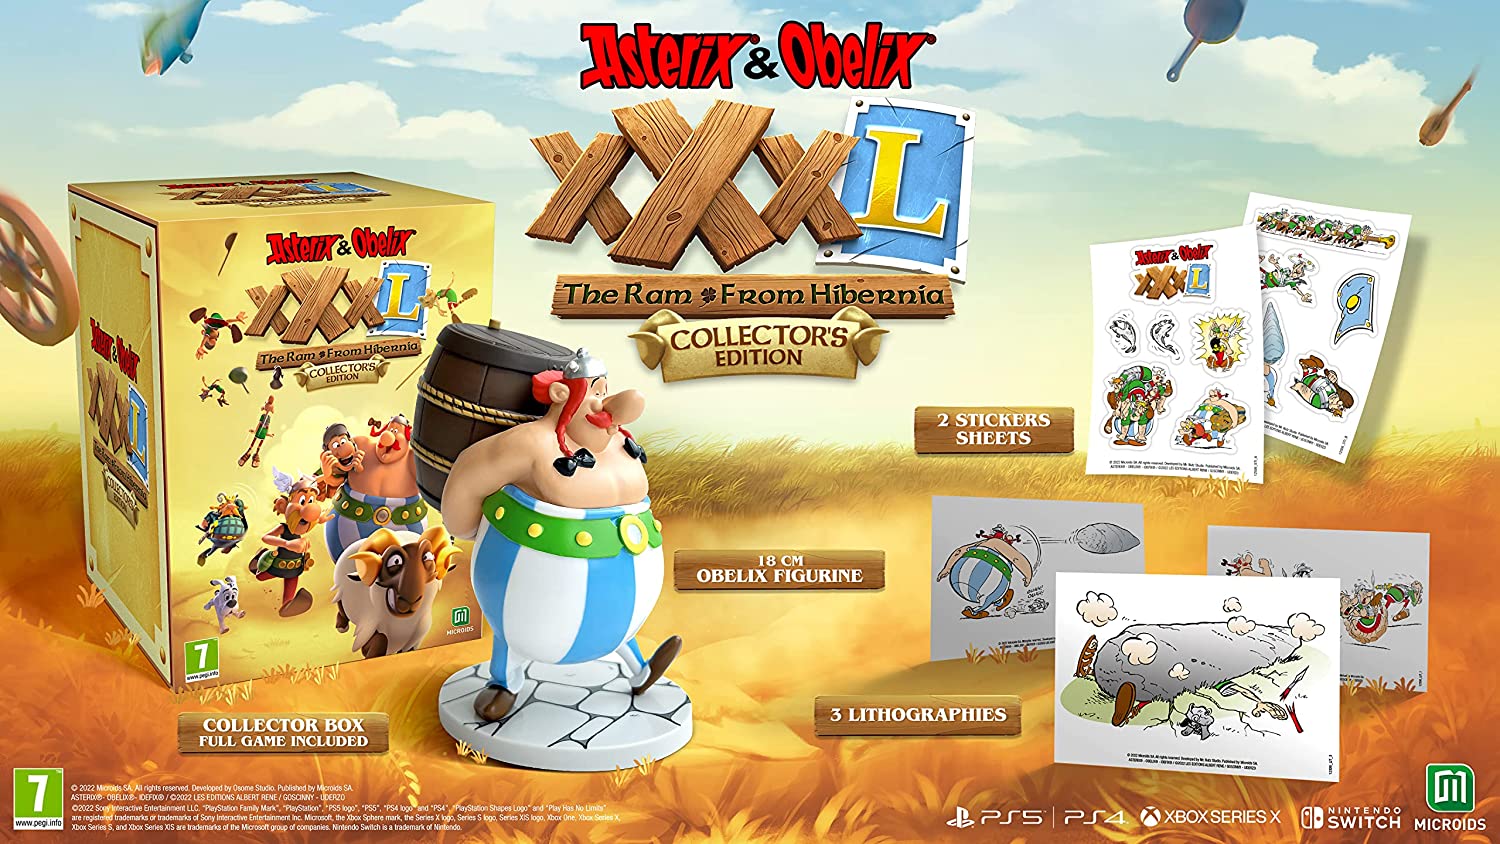 Скриншоты Asterix & Obelix XXXL: The Ram from Hibernia - Collector's Edition [Nintendo Switch, русская версия] интернет-магазин Омегагейм